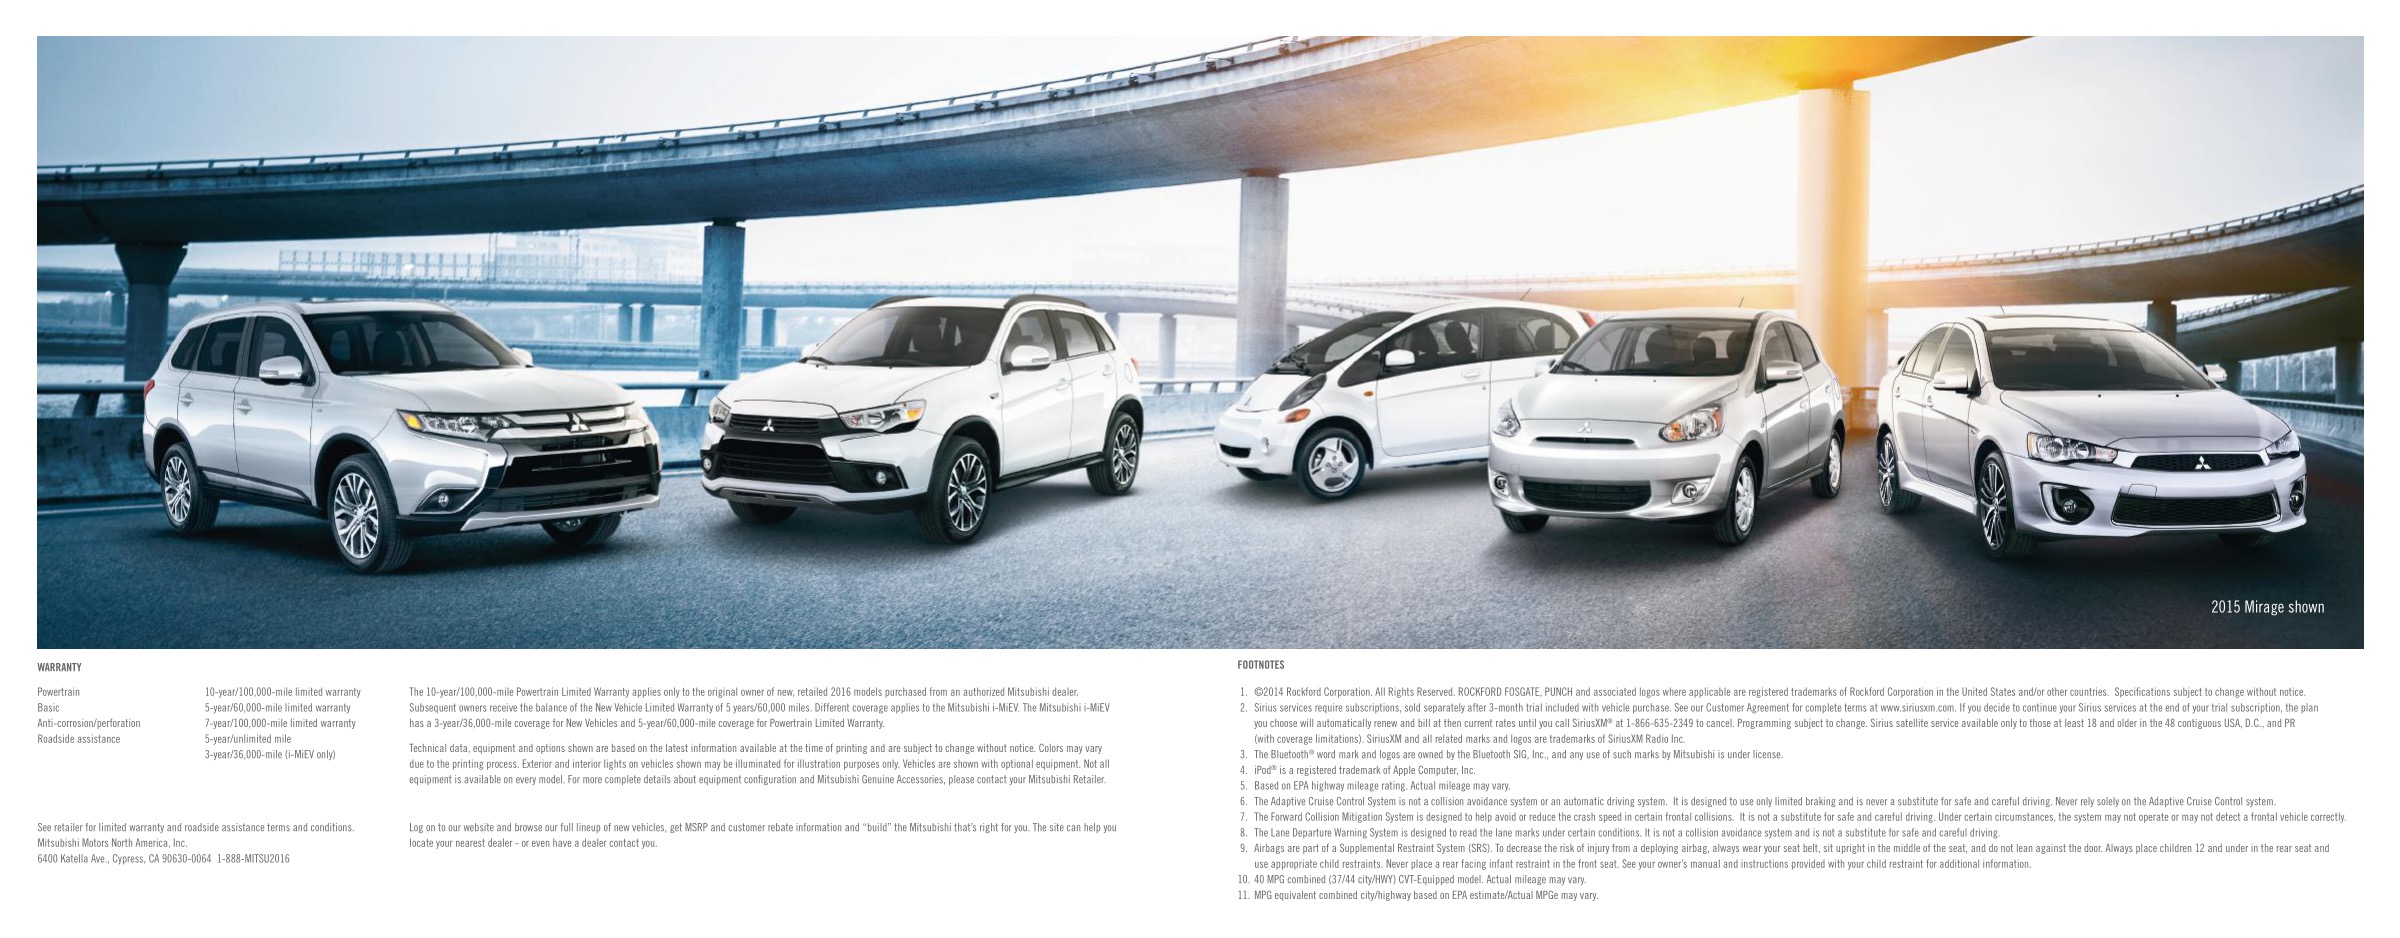 2016 Mitsubishi Full Line Brochure Page 4